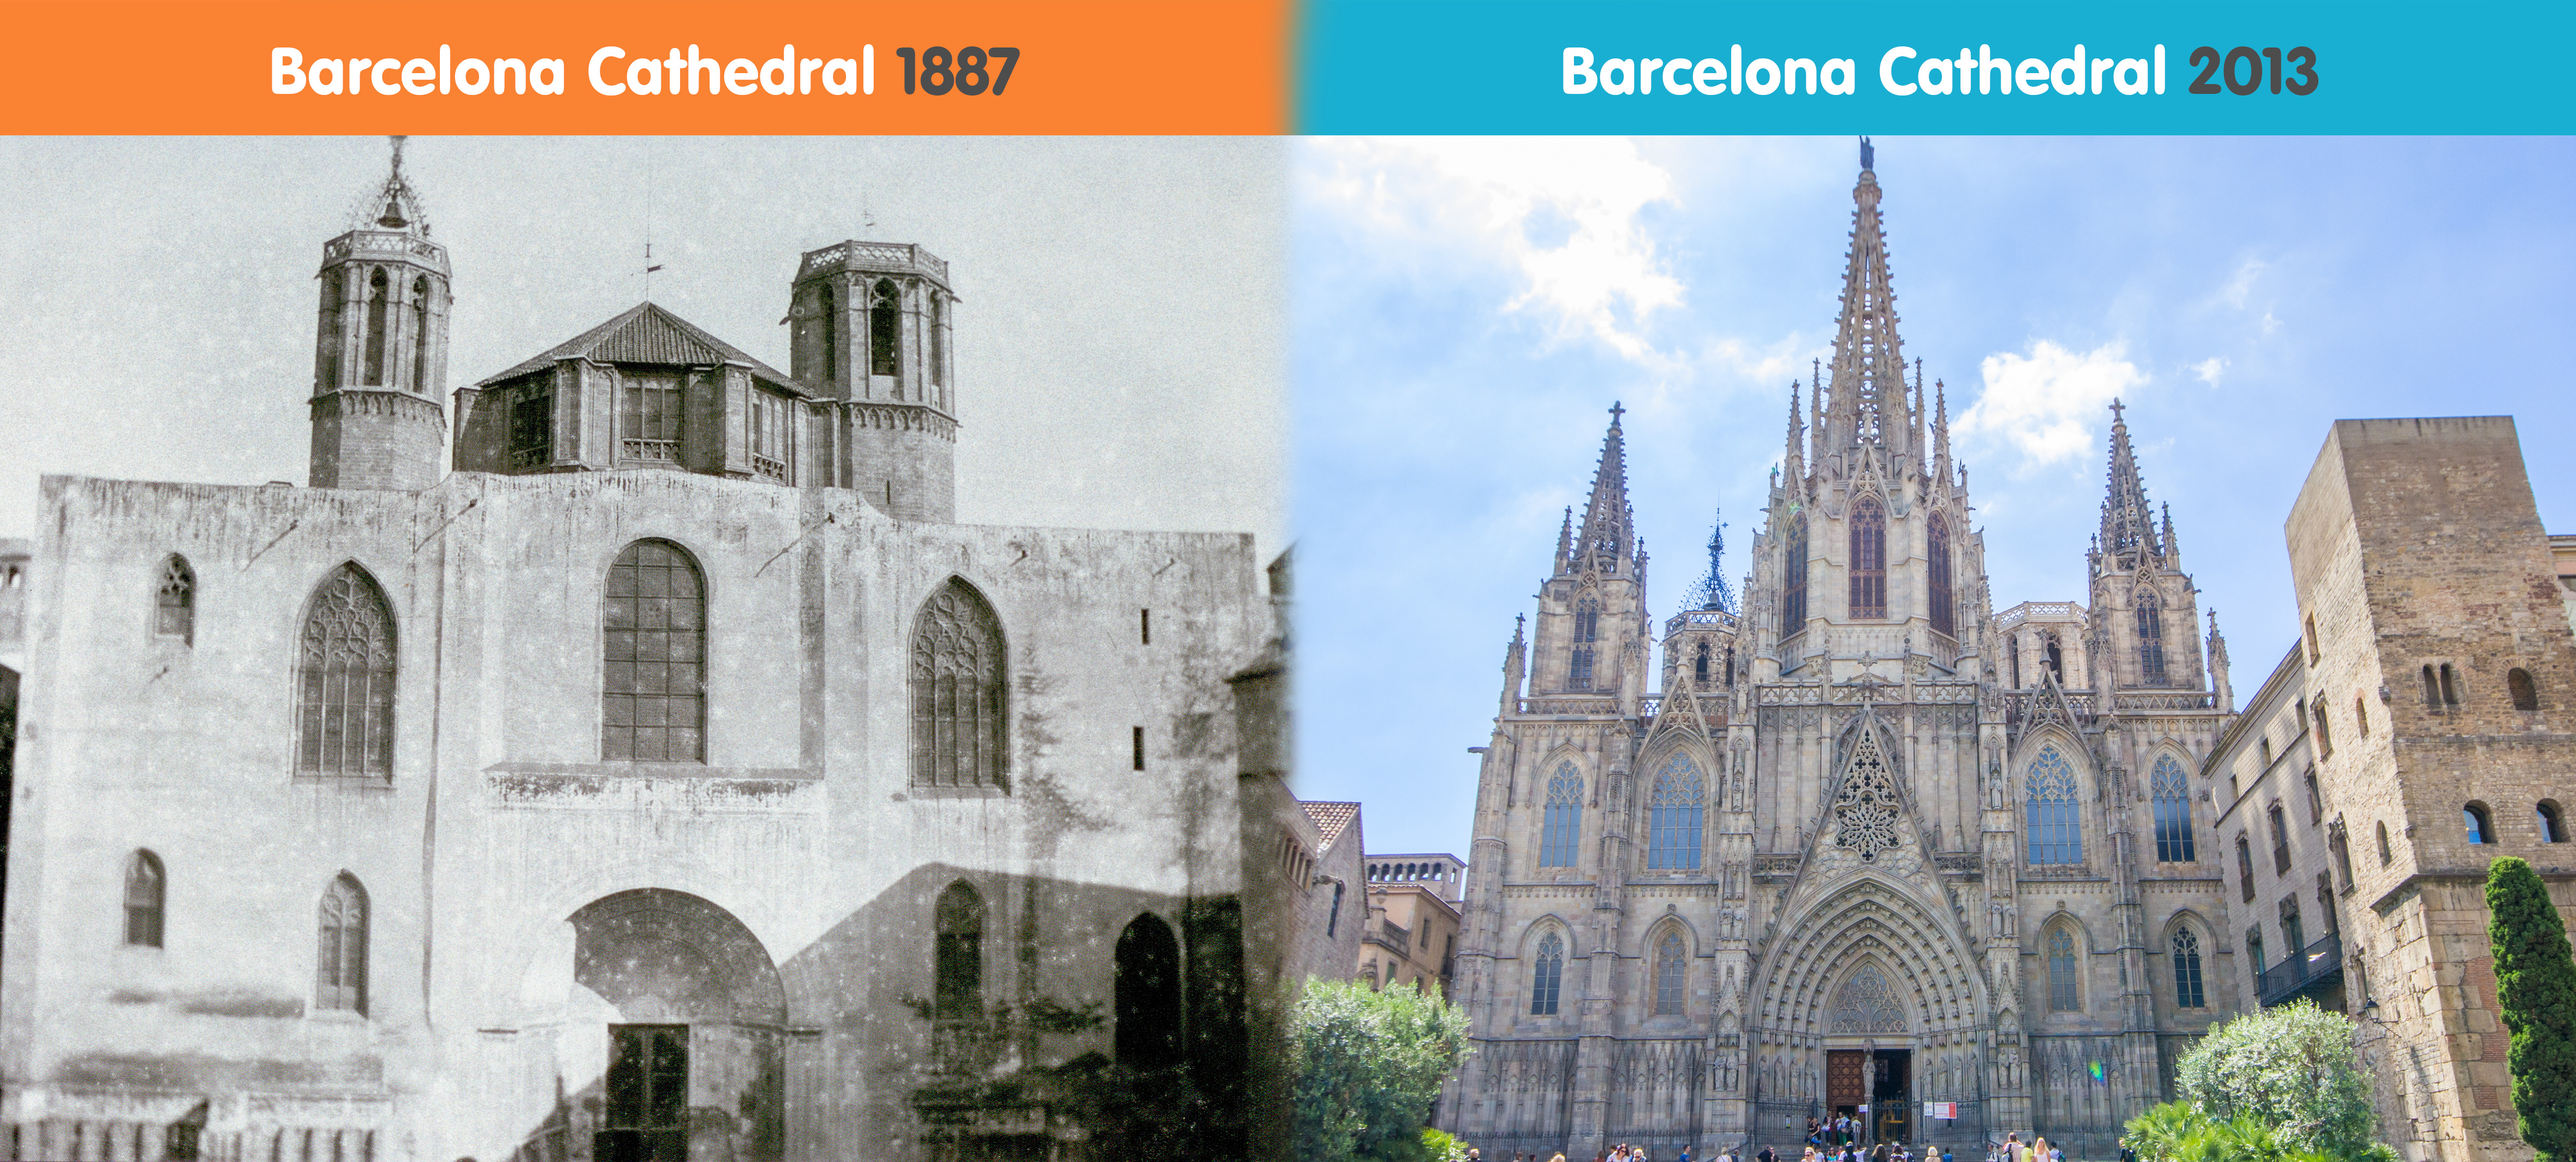 La Catedral de Barcelona: una Historia Legendaria